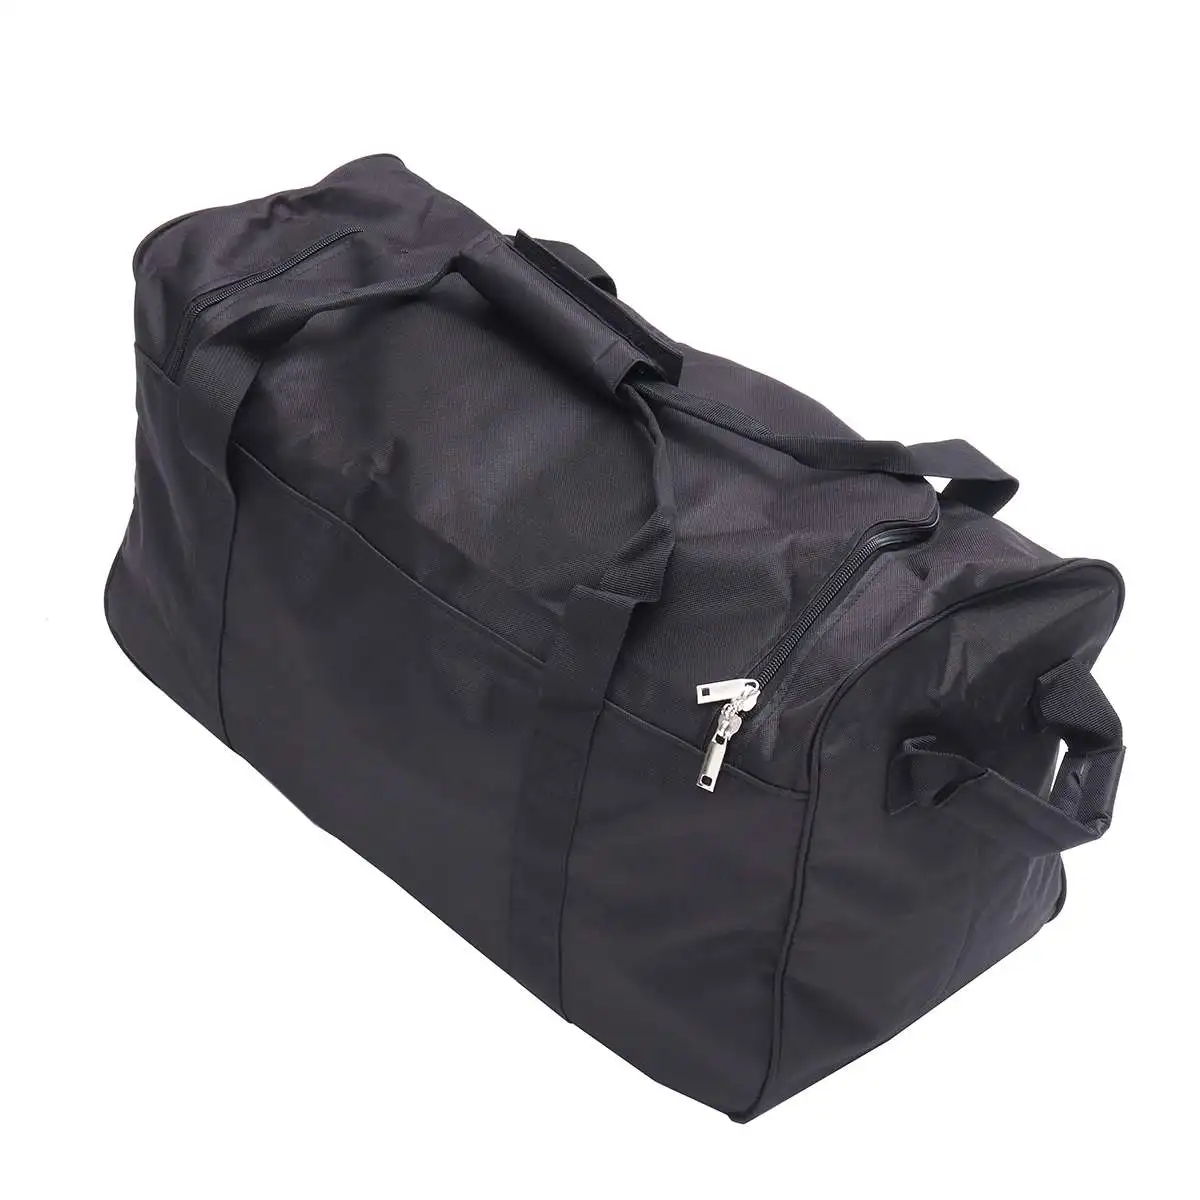 Открытый кемпинг водонепроницаемый Оксфорд путешествия большой вещевой мешок складной чемодан сумка для женщин и мужчин рюкзак для хранения сумка S/M/L